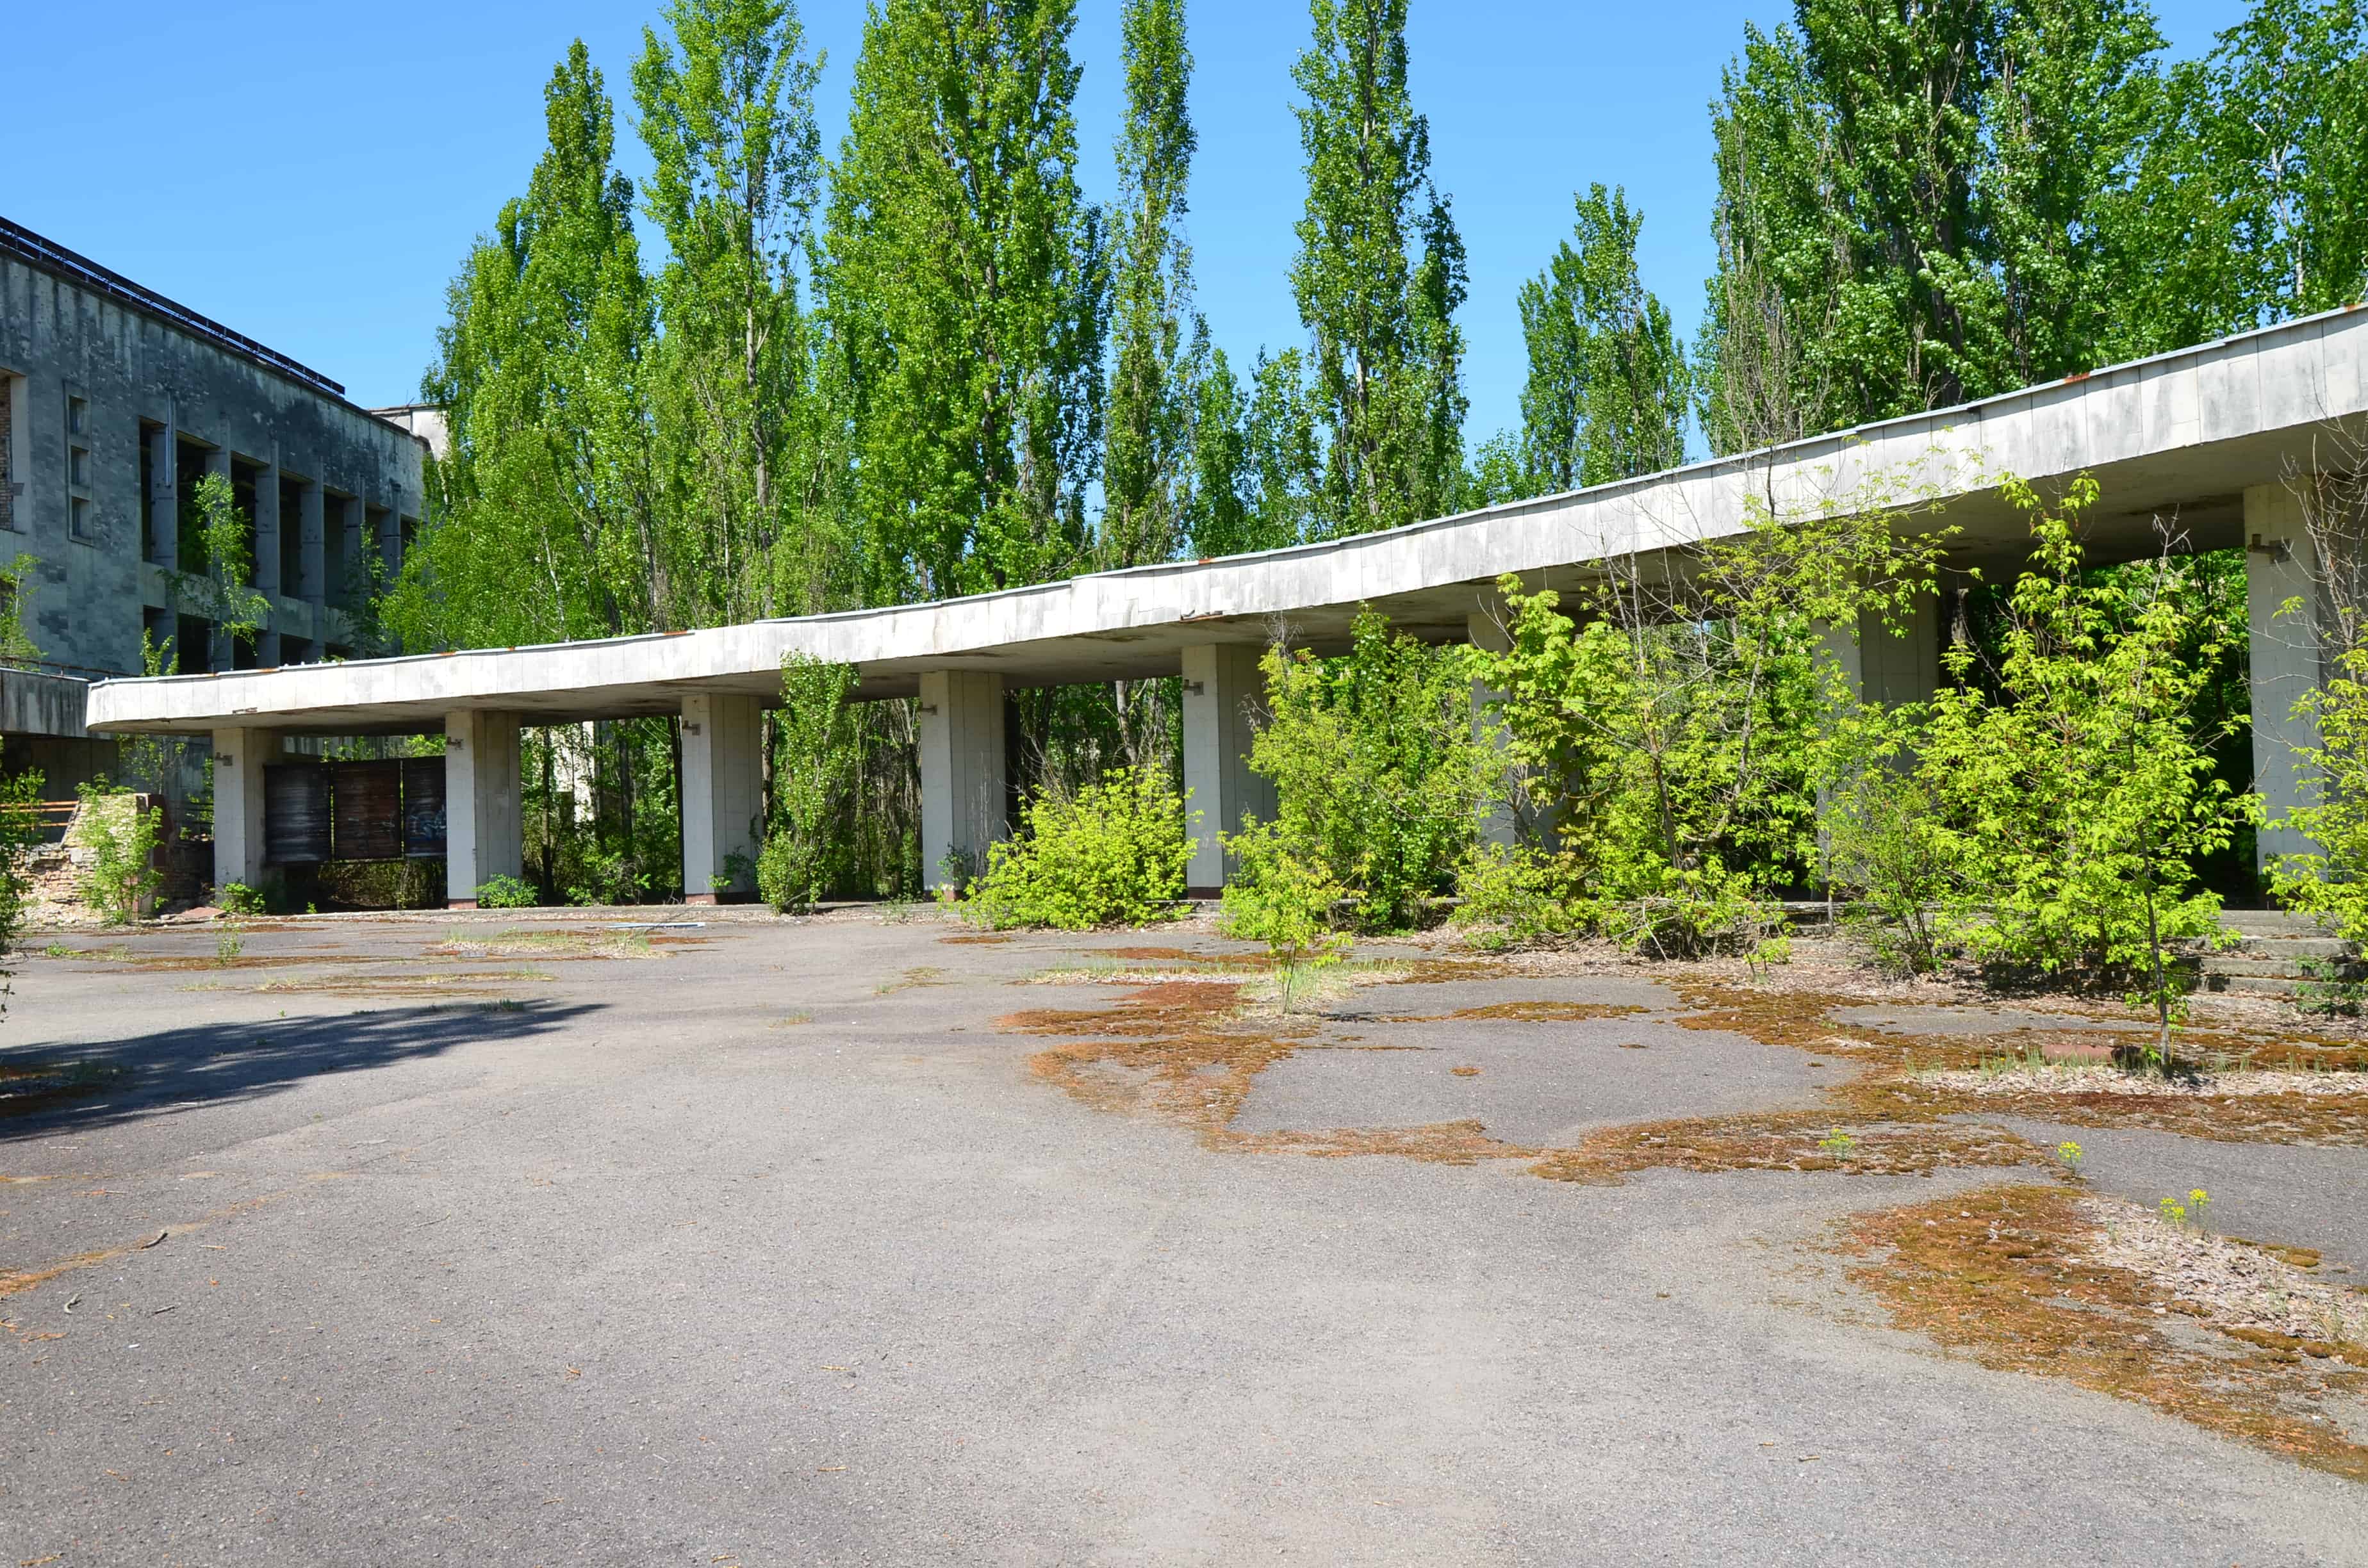 Colonnade in Pripyat, Chernobyl Exclusion Zone, Ukraine